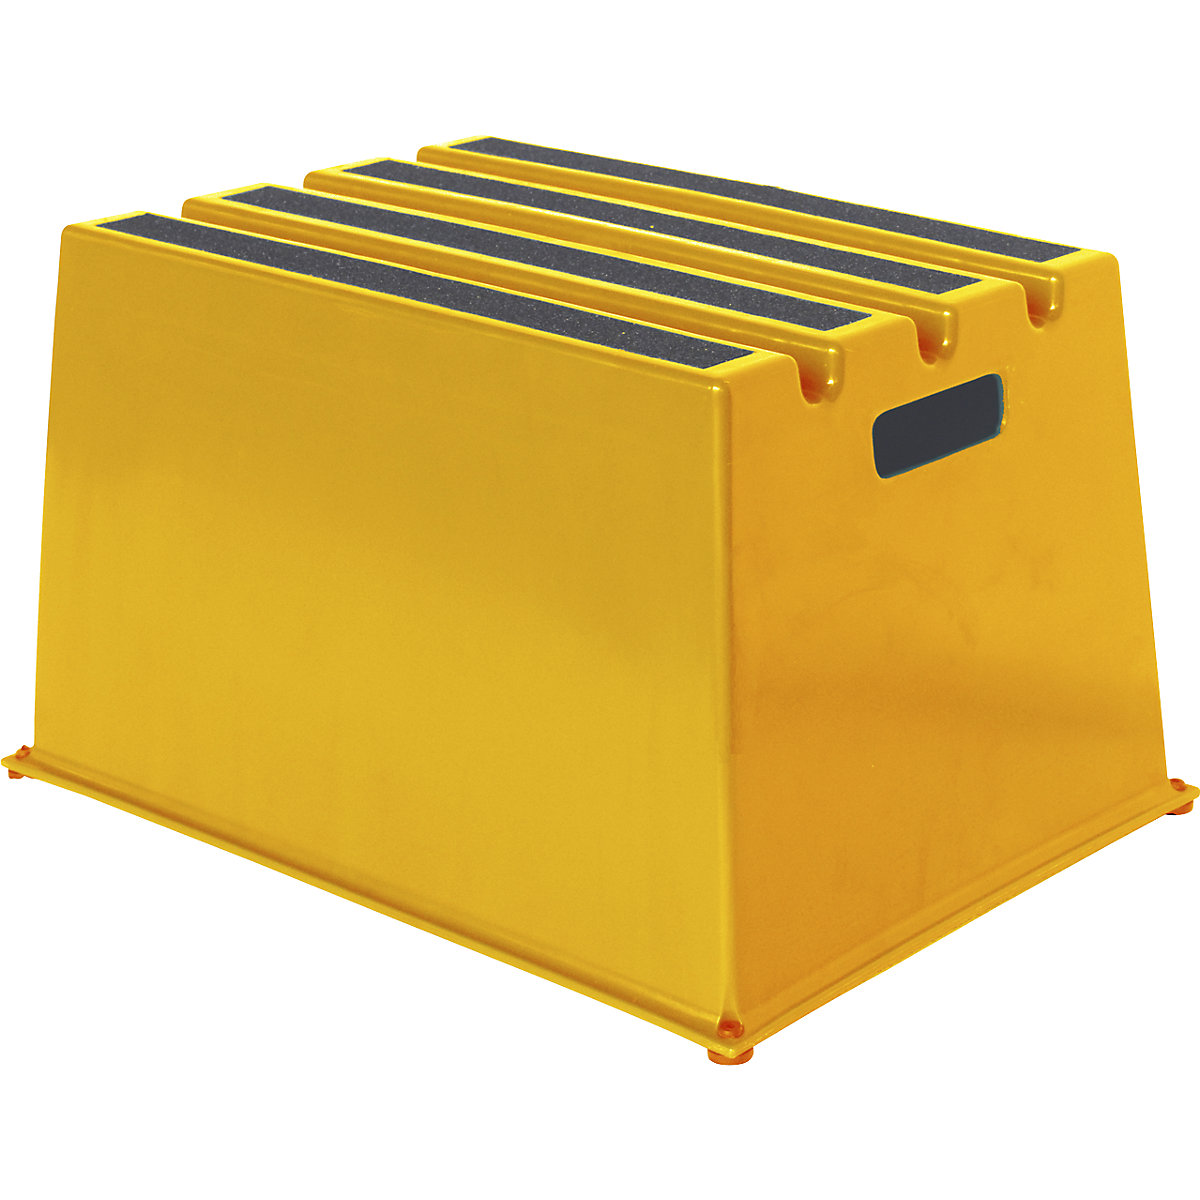 Kunststoff-Tritt mit rutschfesten Stufen Twinco, Traglast 150 kg, 1 Stufe, gelb-6